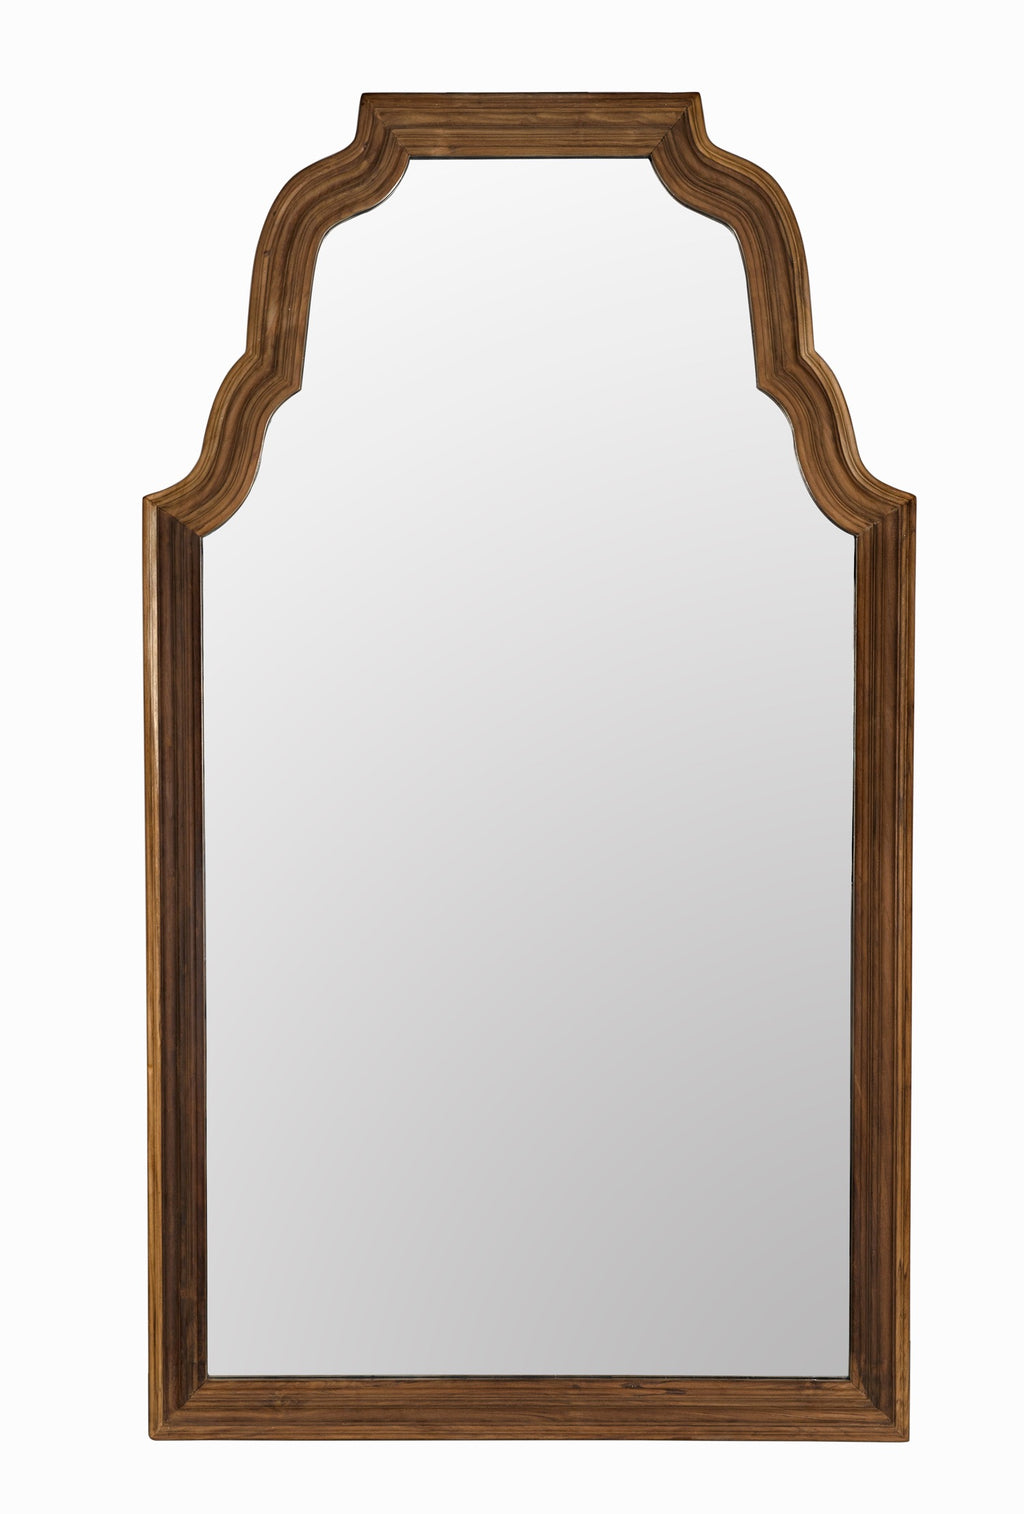 Reclaimed Floor Mirror